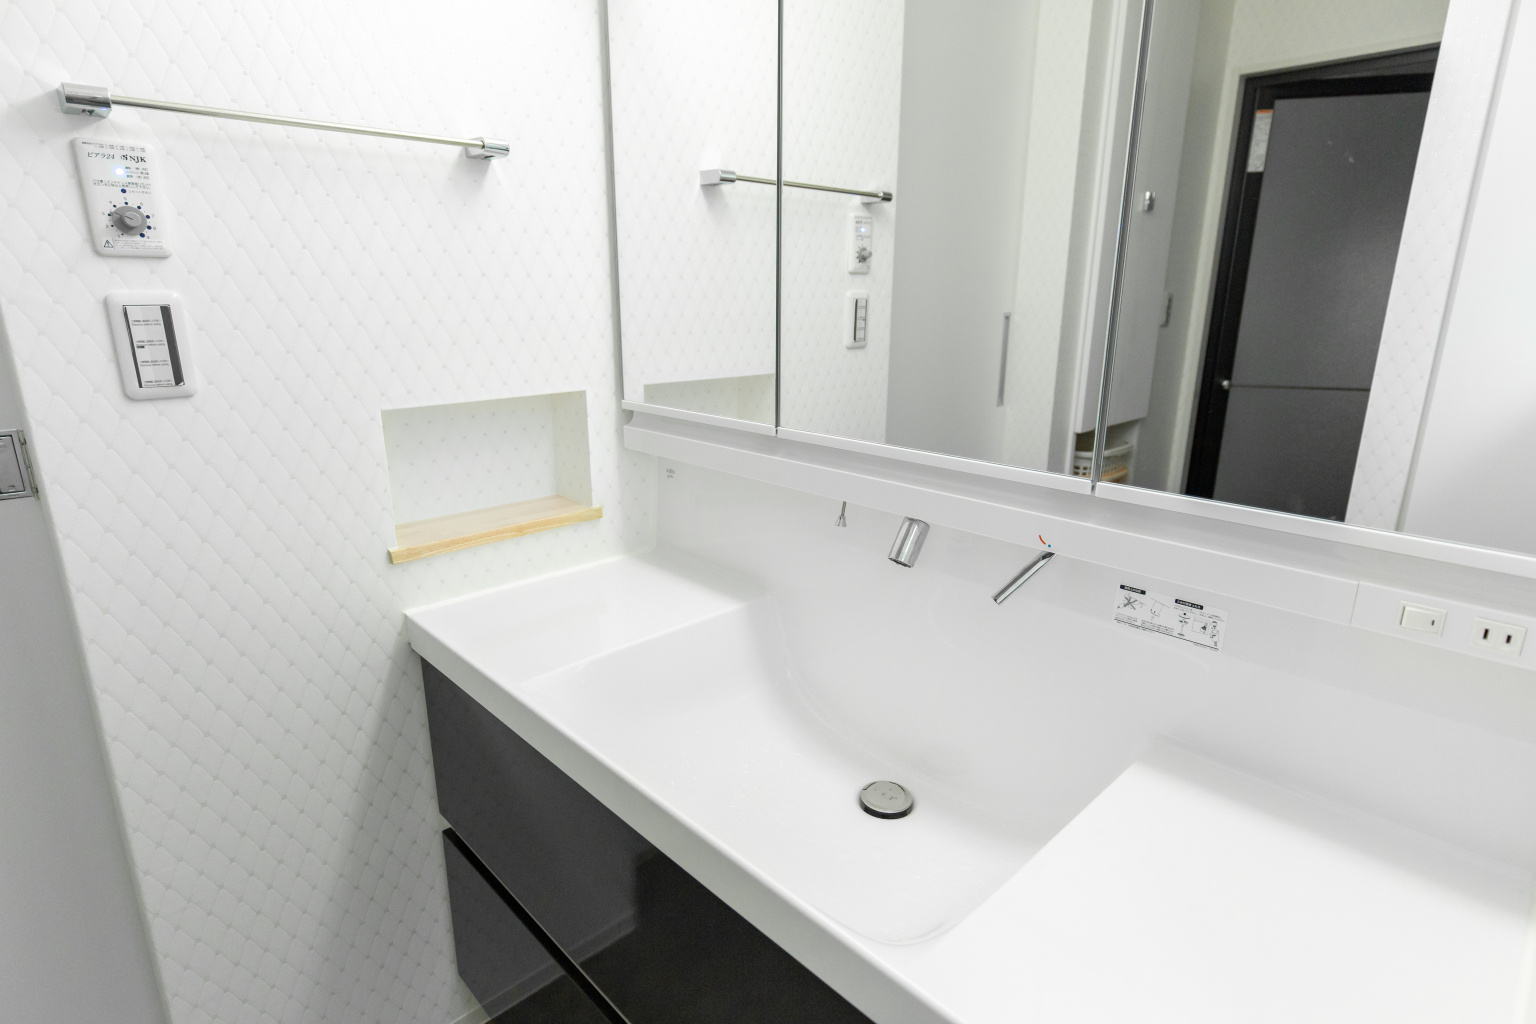 システム洗面台とニッチを設けたオシャレな洗面スペース。スイッチ上には全館換気のコントローラーを設置。